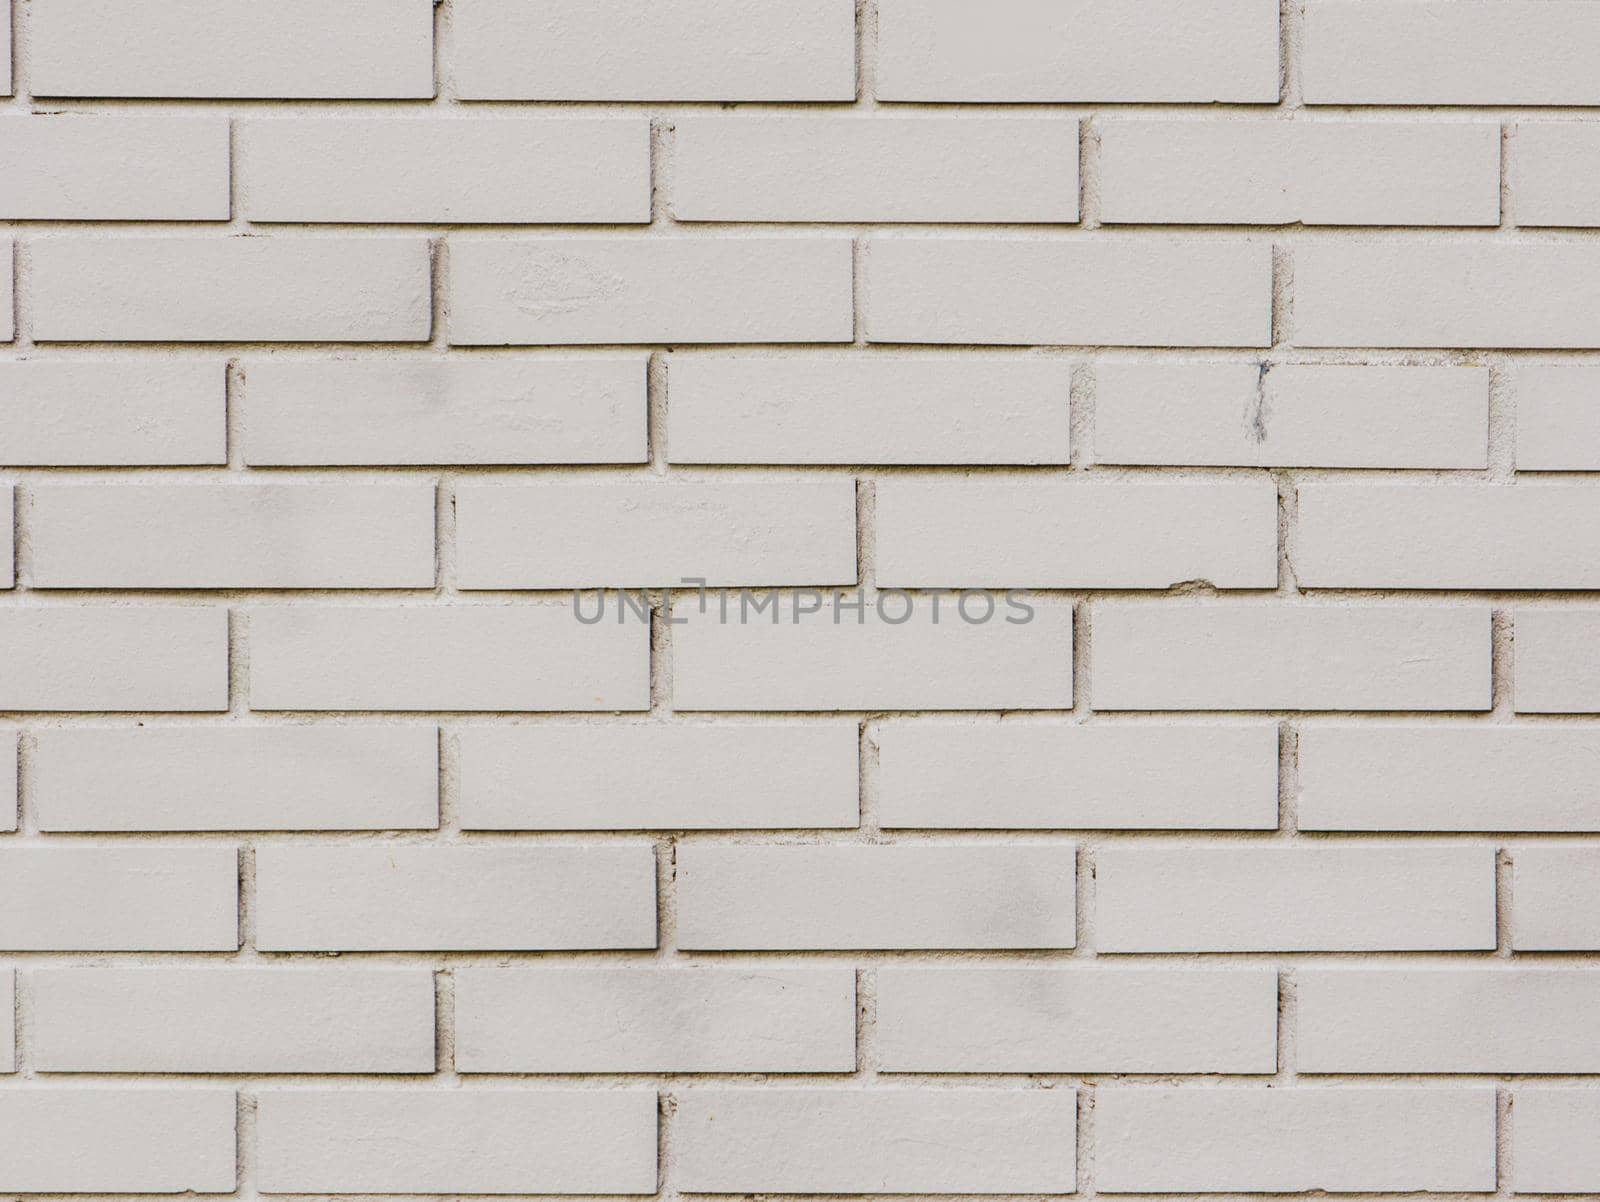 Surface of gray brick wall